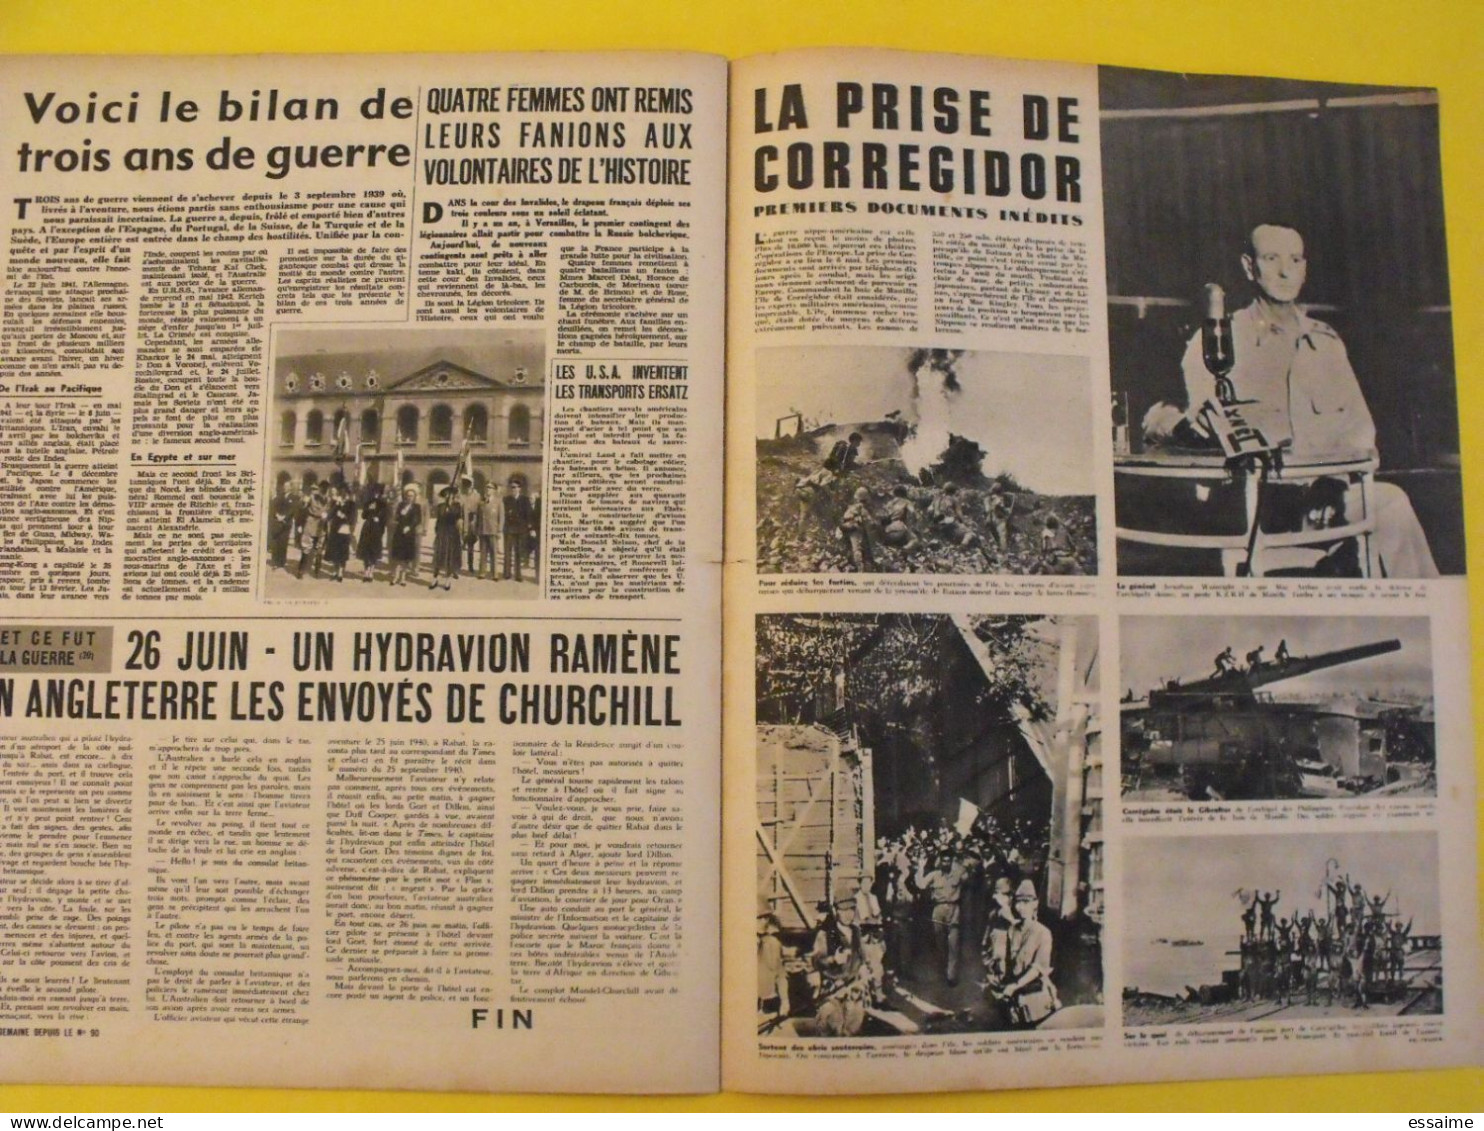 6 revues La semaine de 1942. actualités guerre photos collaboration sebastopol micheline presle dieppe libye